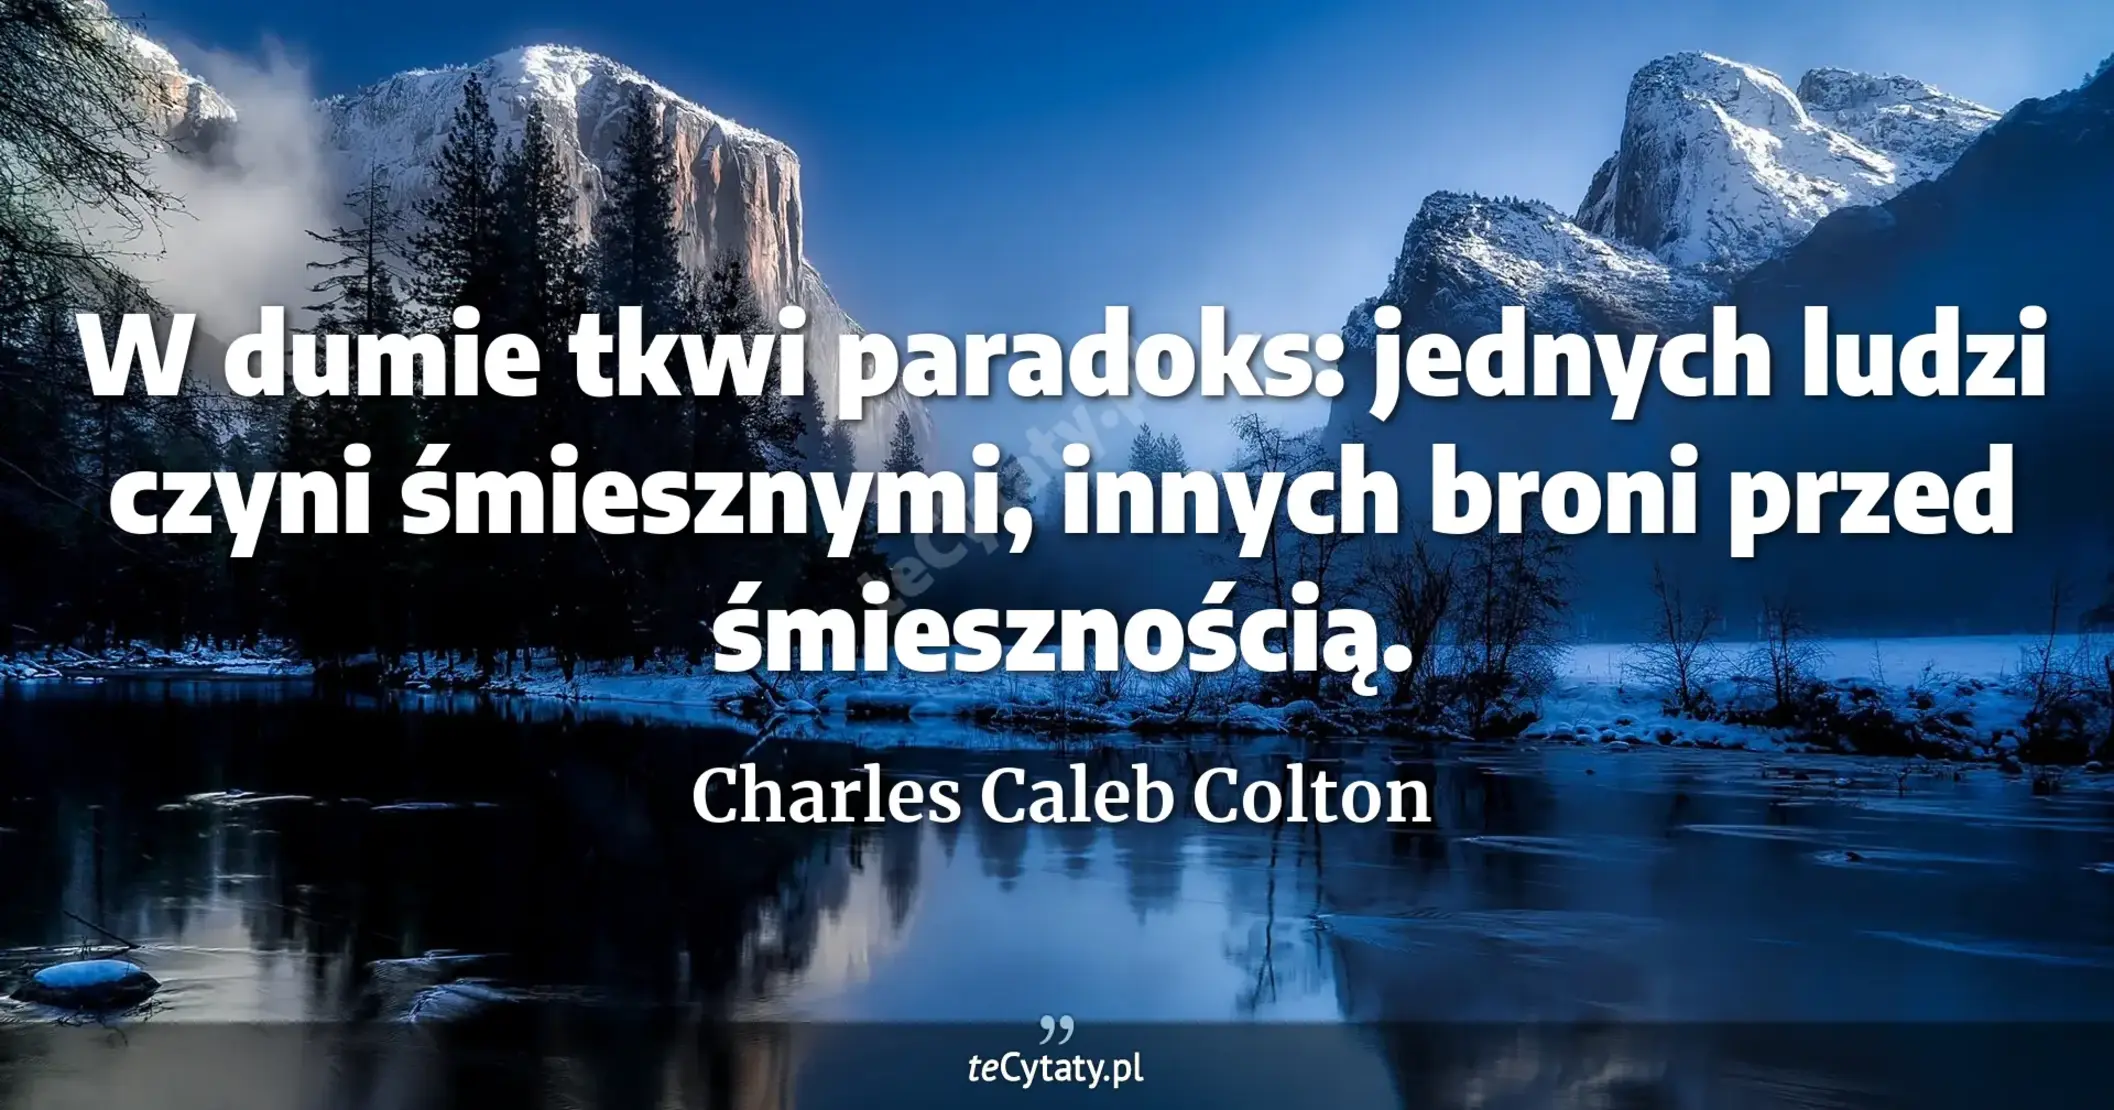 W dumie tkwi paradoks: jednych ludzi czyni śmiesznymi, innych broni przed śmiesznością. - Charles Caleb Colton